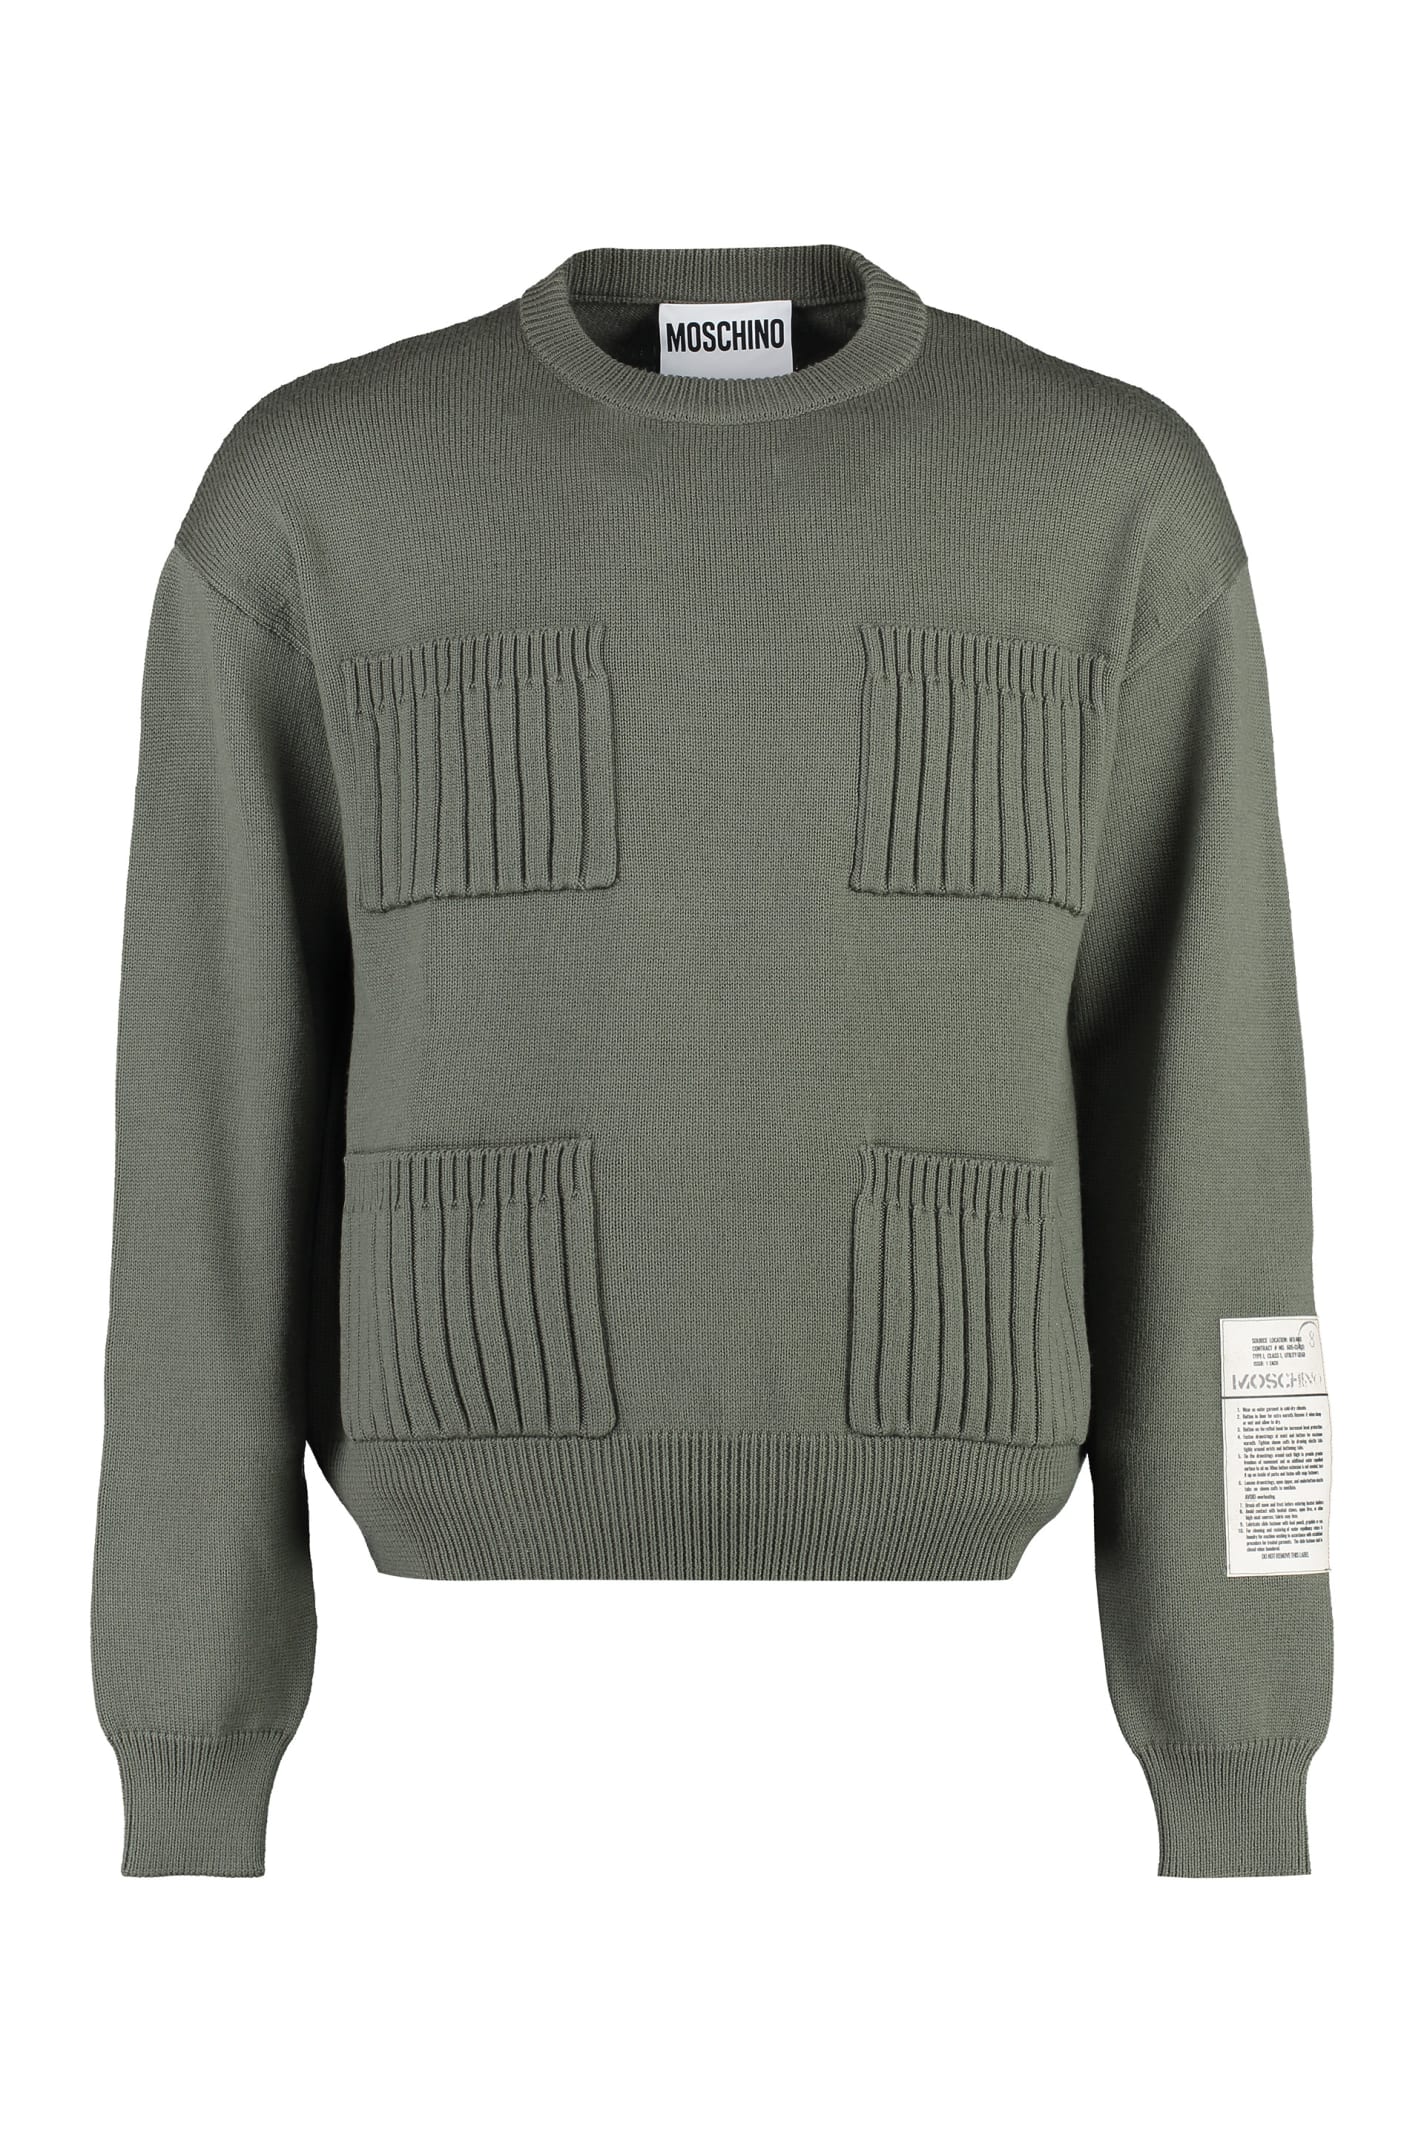 Moschino Virgin Wool Sweater In Green